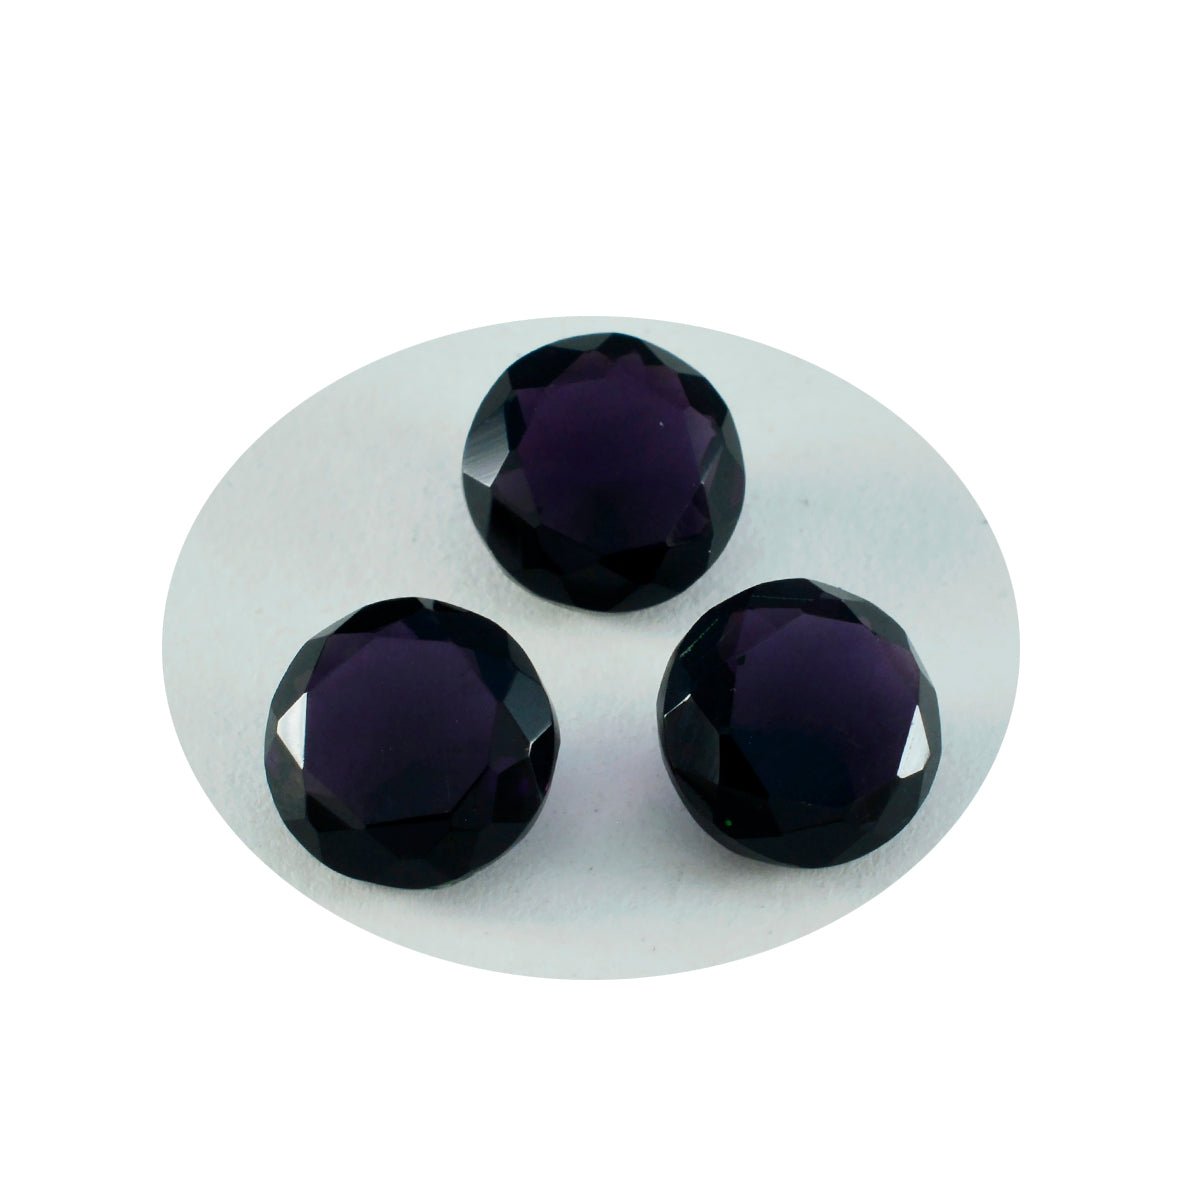 riyogems 1шт фиолетовый аметист cz ограненный 15x15 мм круглая форма отличное качество россыпь драгоценных камней